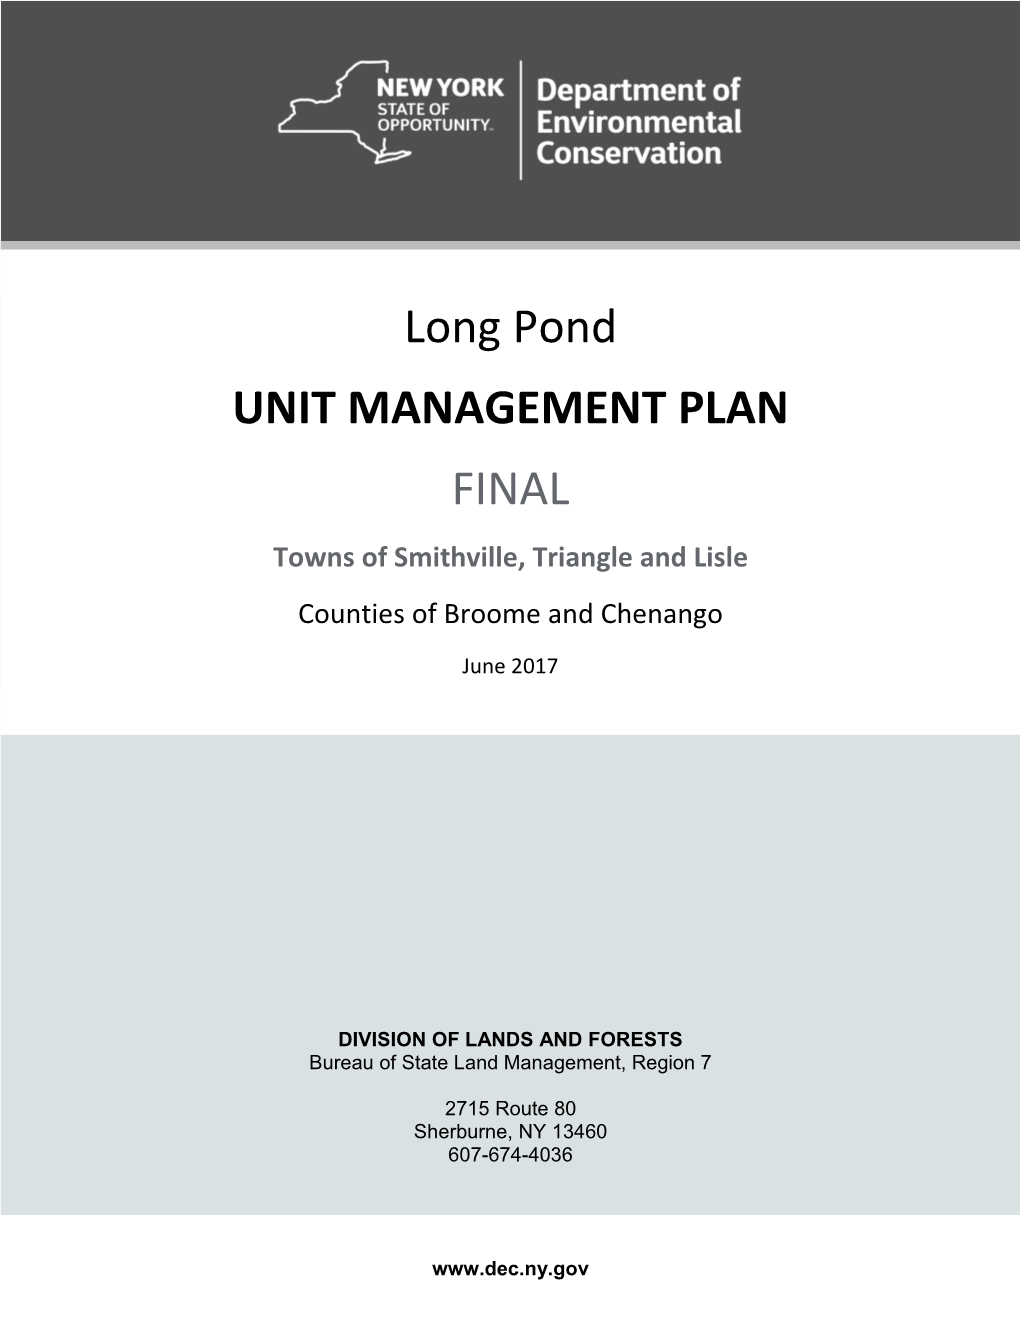 Final Long Pond Unit Management Plan